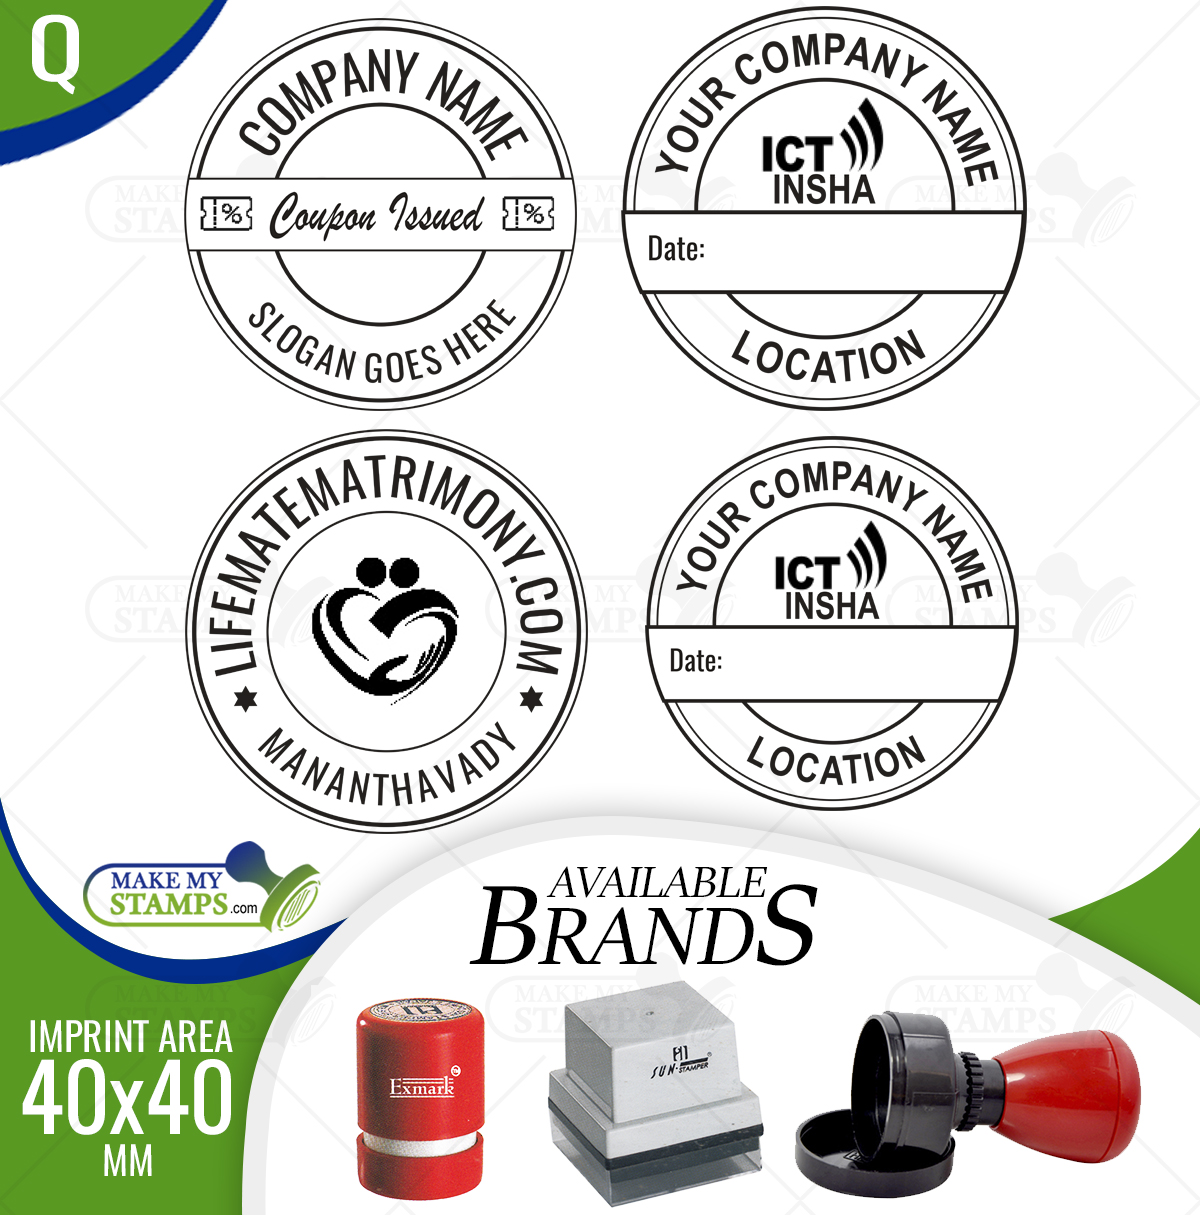 Customised Self Ink Stamp Online I Design your Rubber Stamp Online